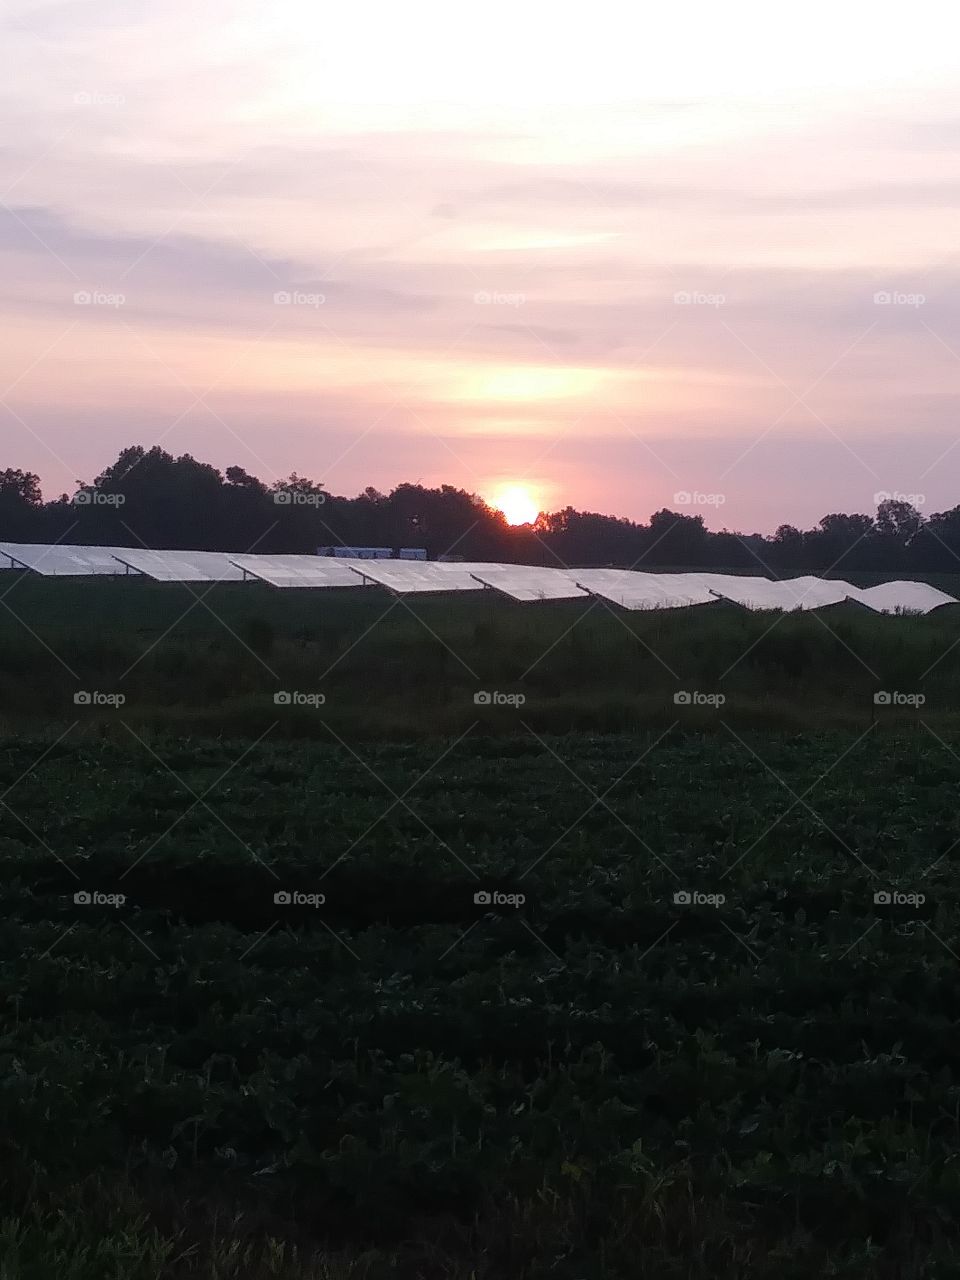 sunrise over a solar farm